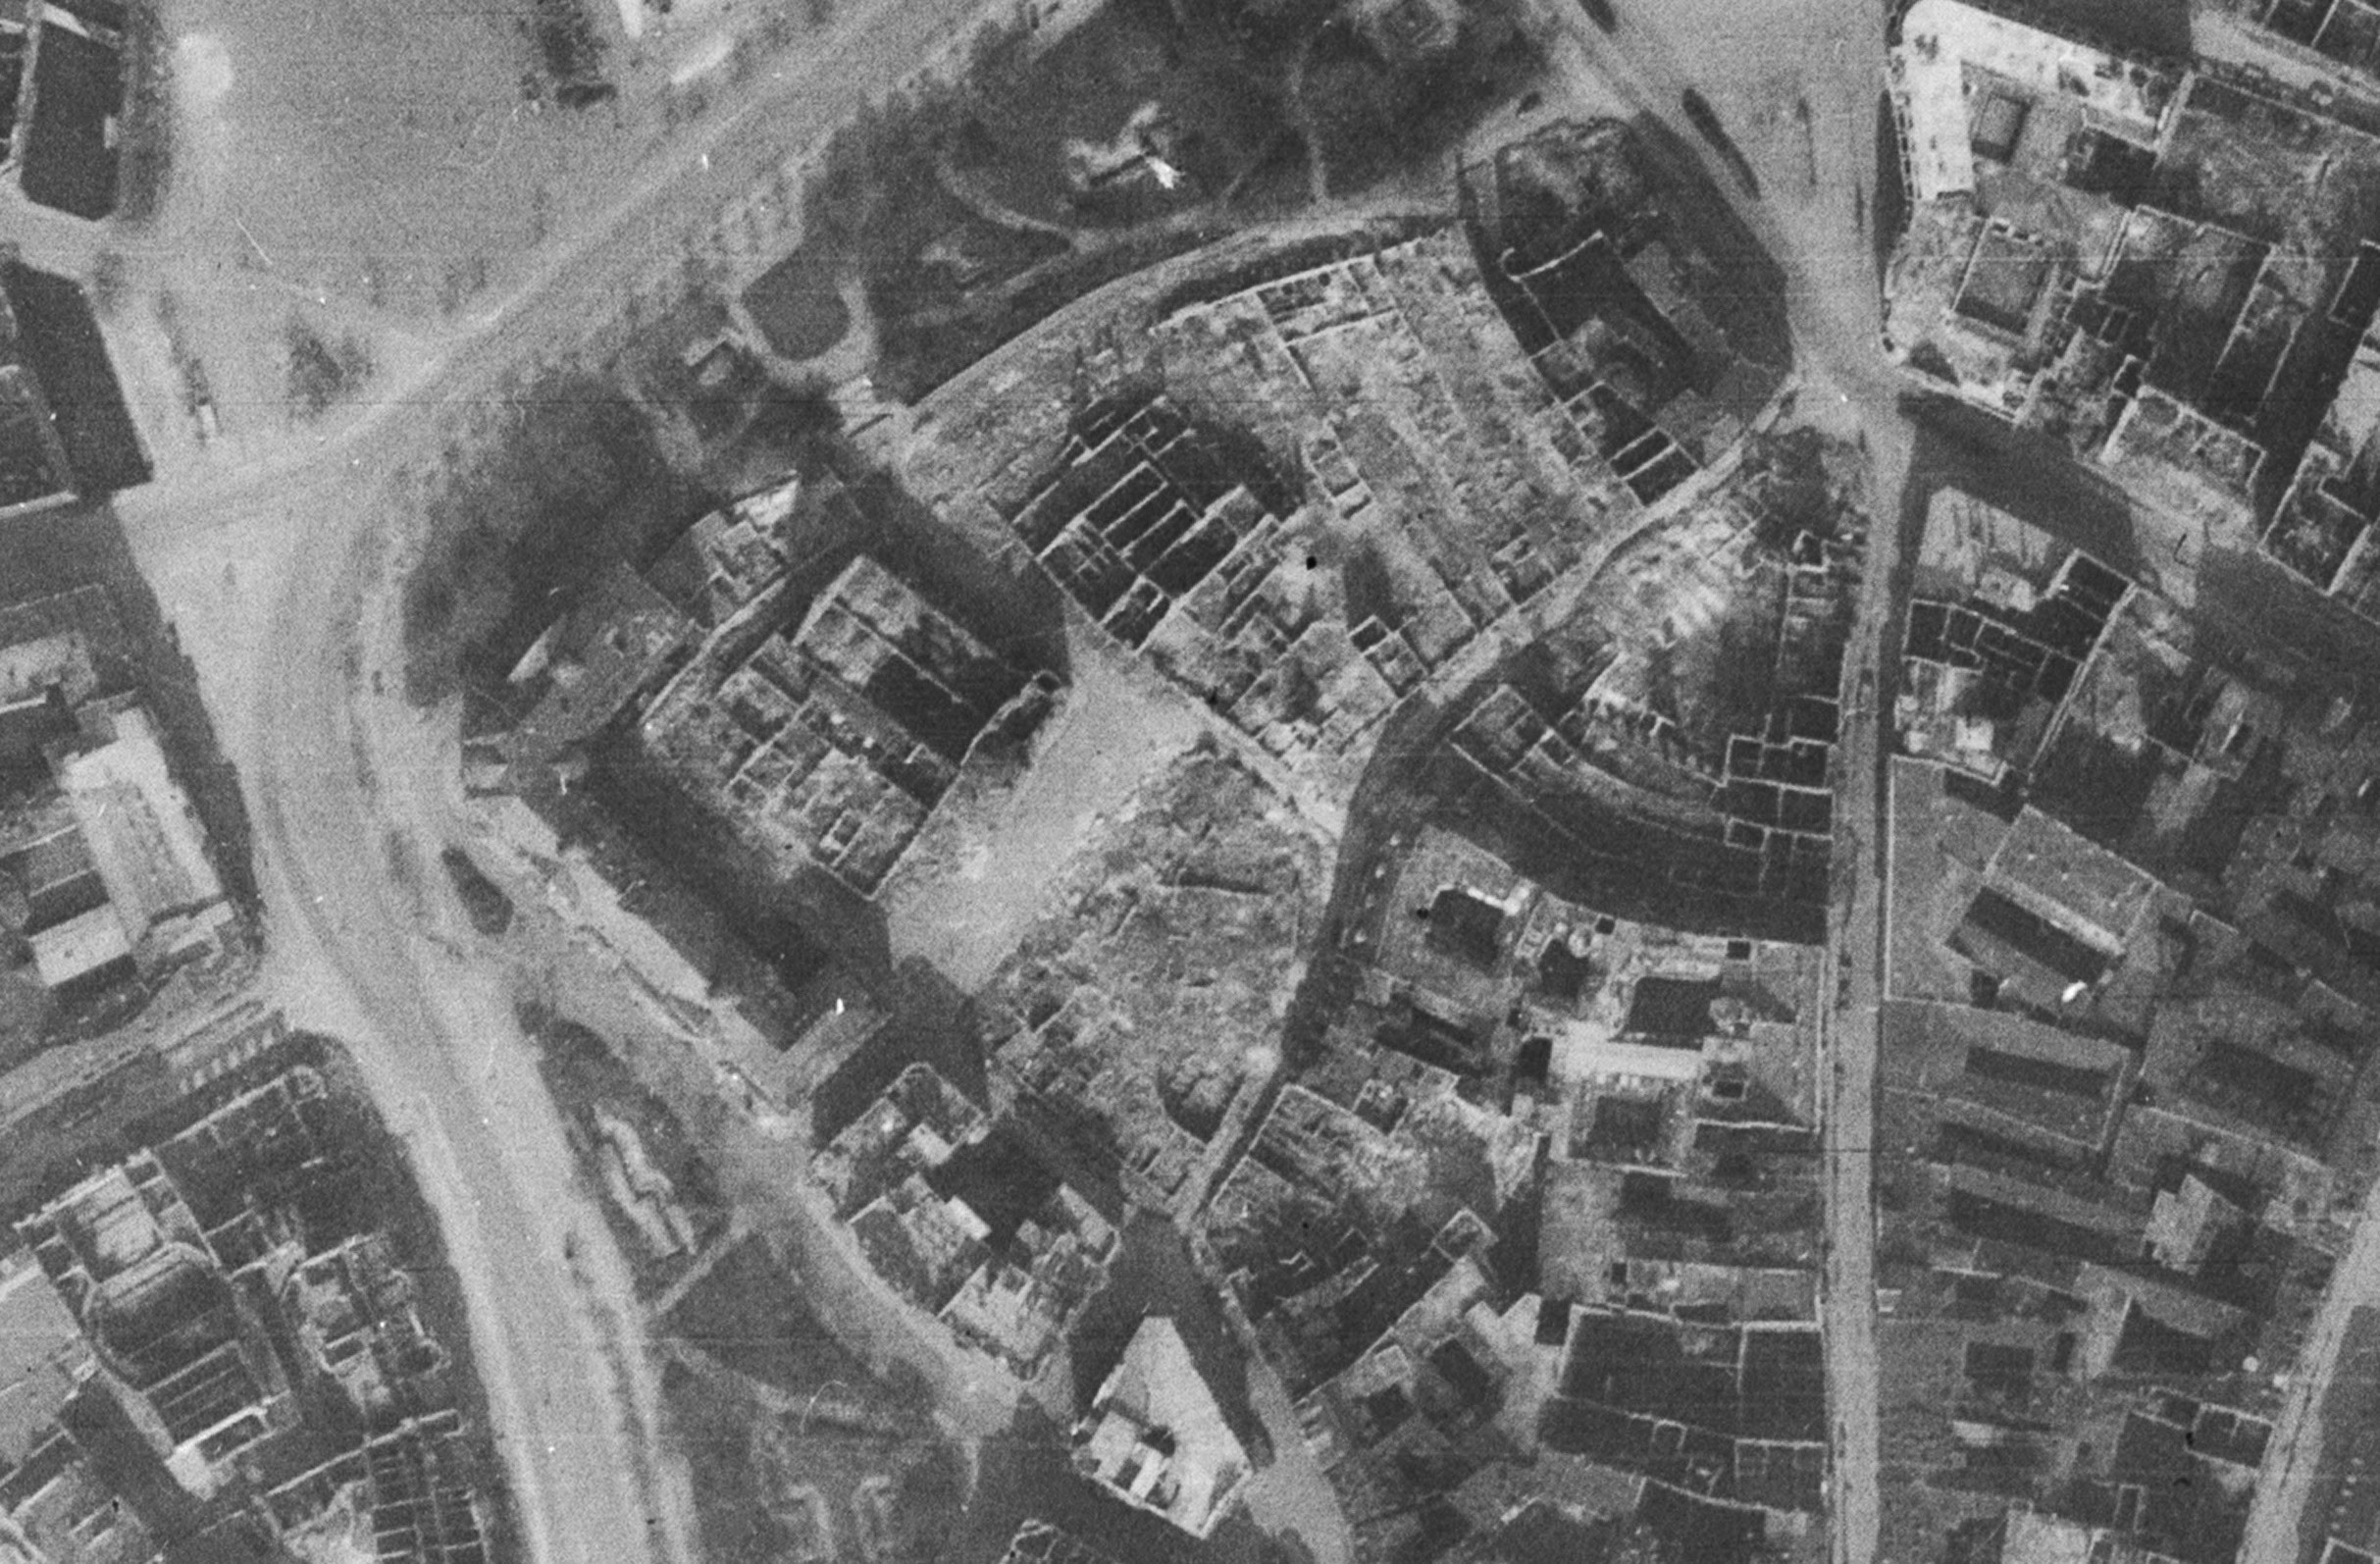 Das zerbombte Areal am 11.4.1945. Luftbilddatenbank Ing.f Büro Dr. Carls, 106 G/5281, Aufn. 4069